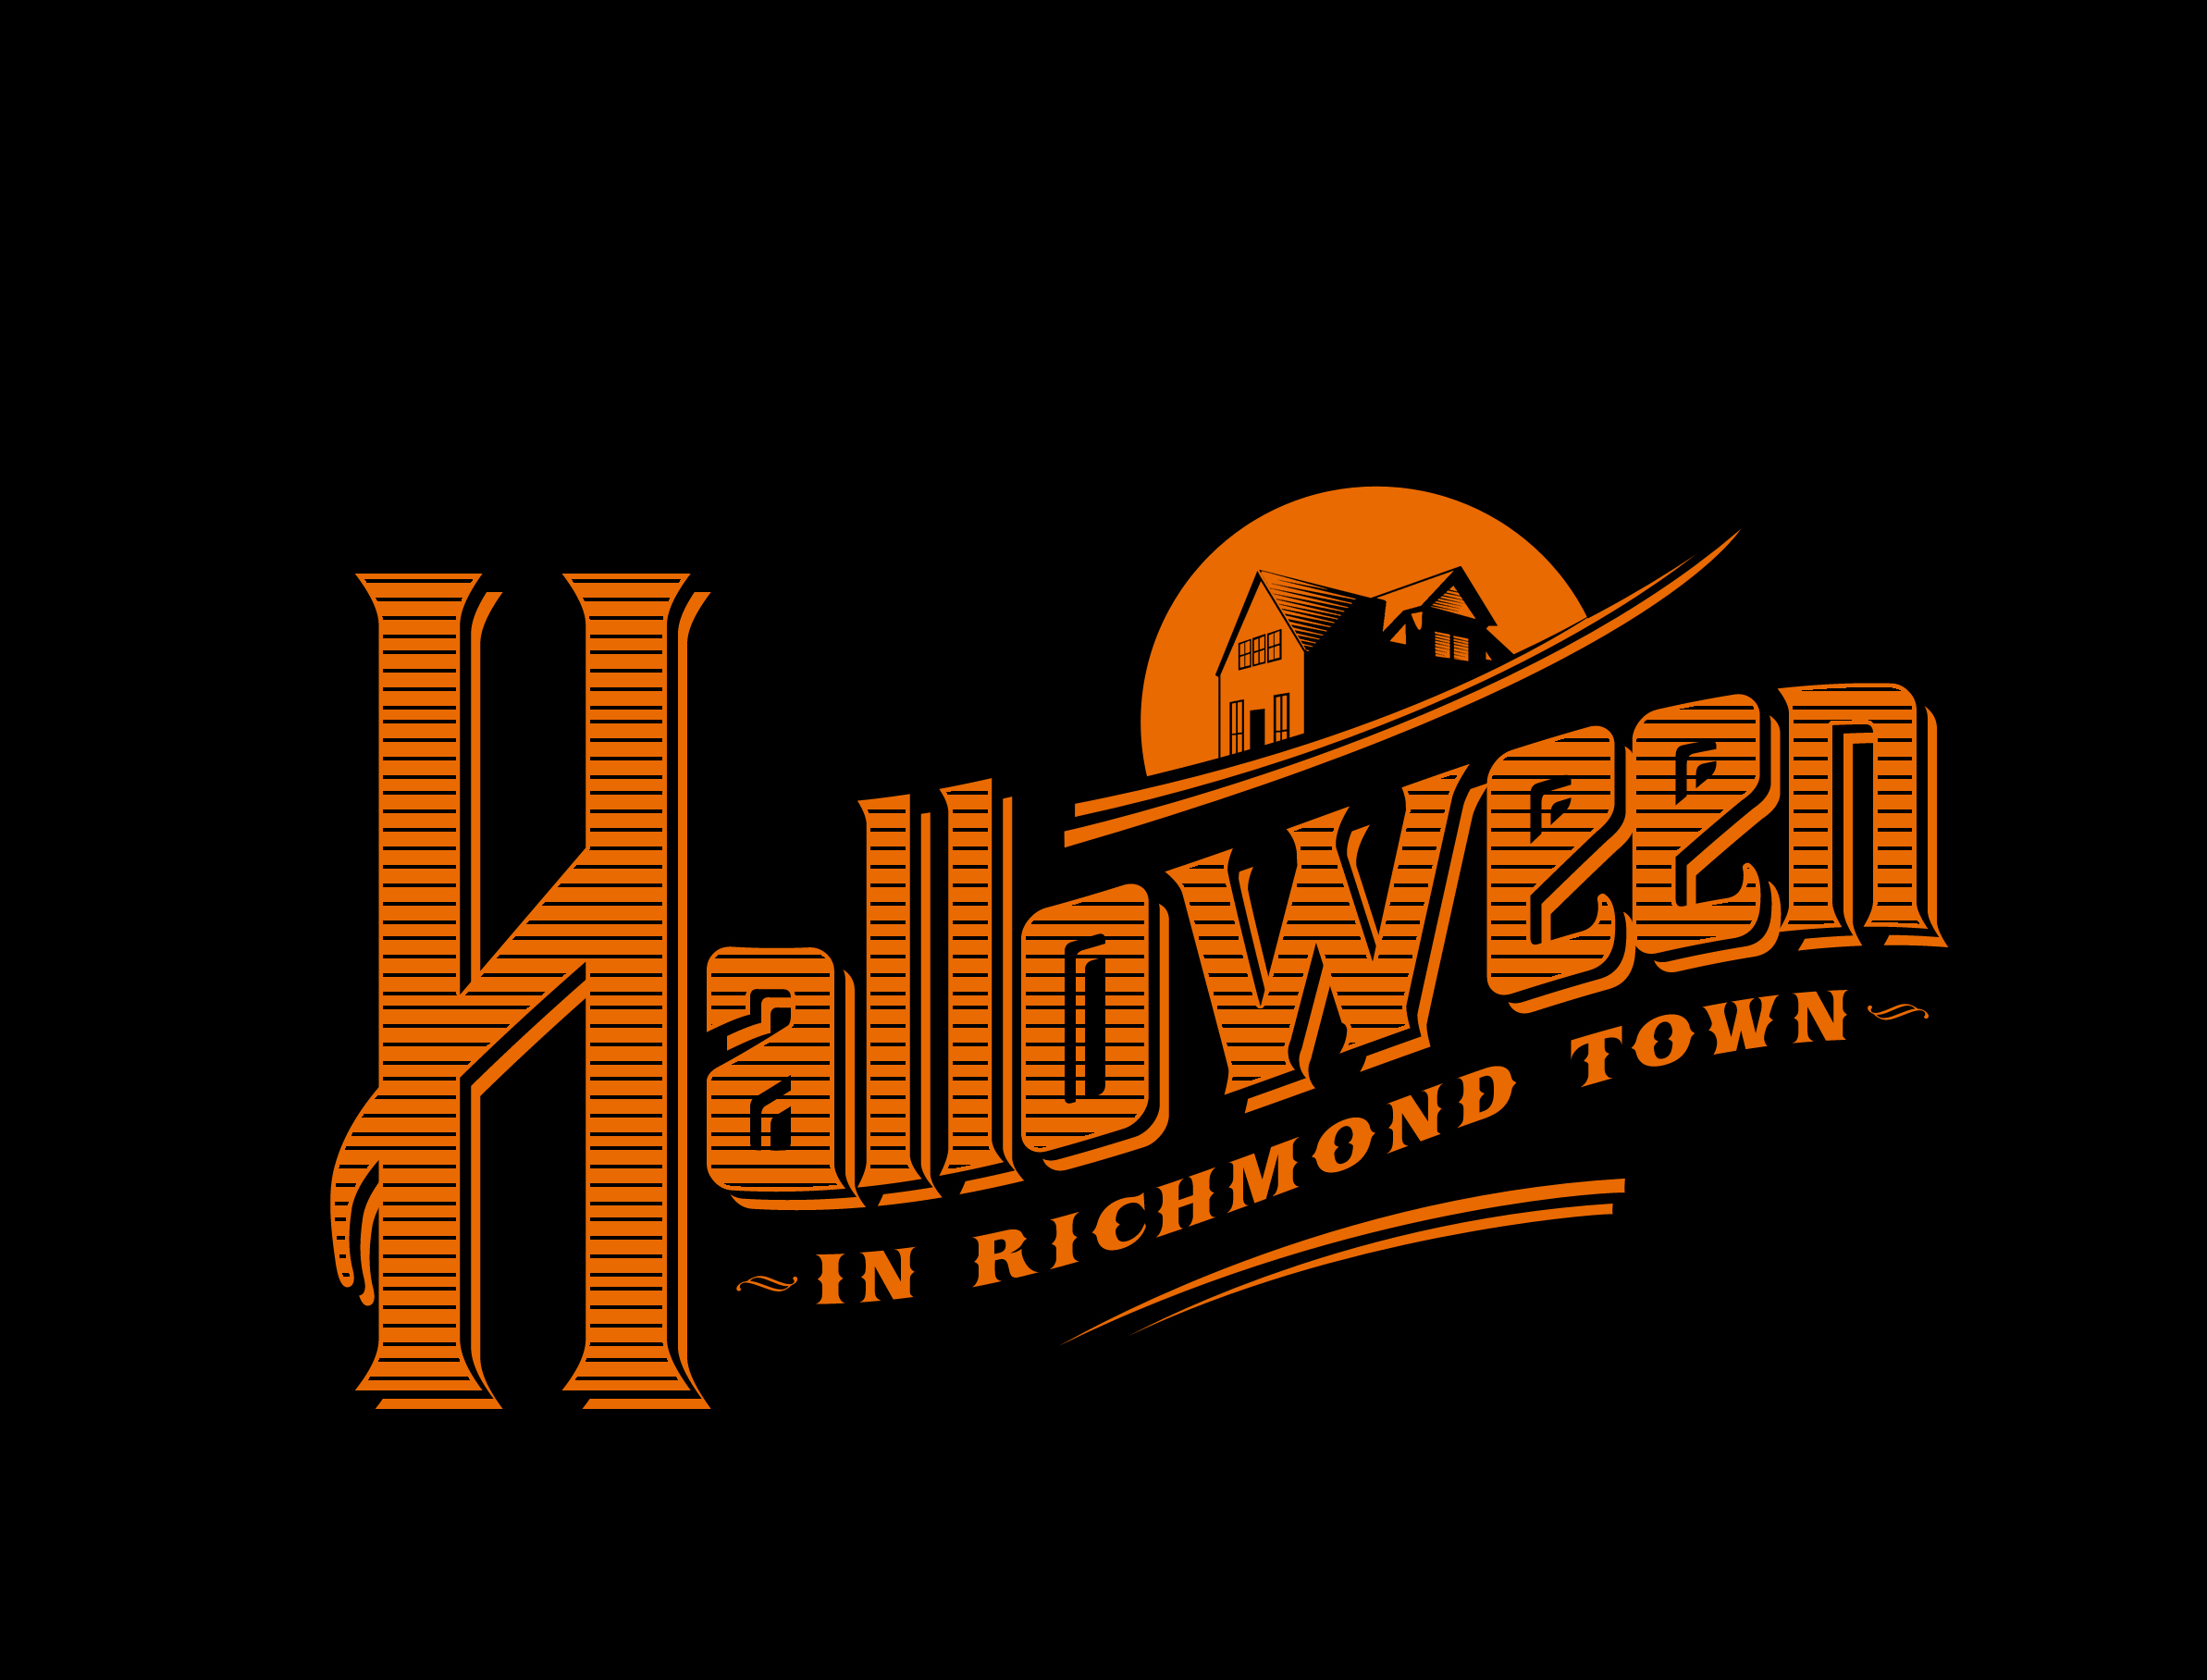 Halloween In Richmond Town